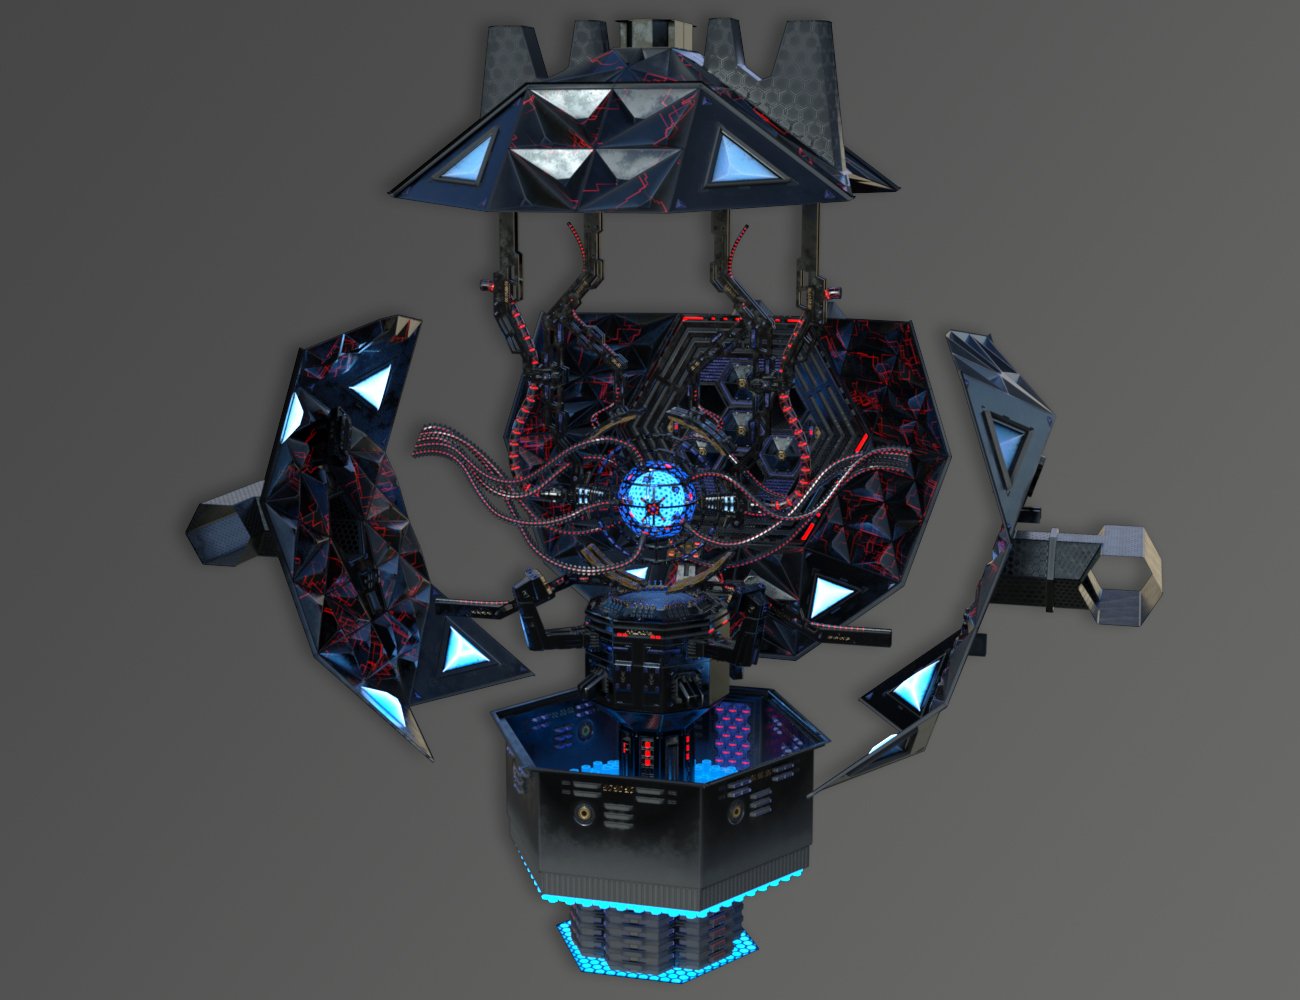 Dominator Archon by: petipet, 3D Models by Daz 3D